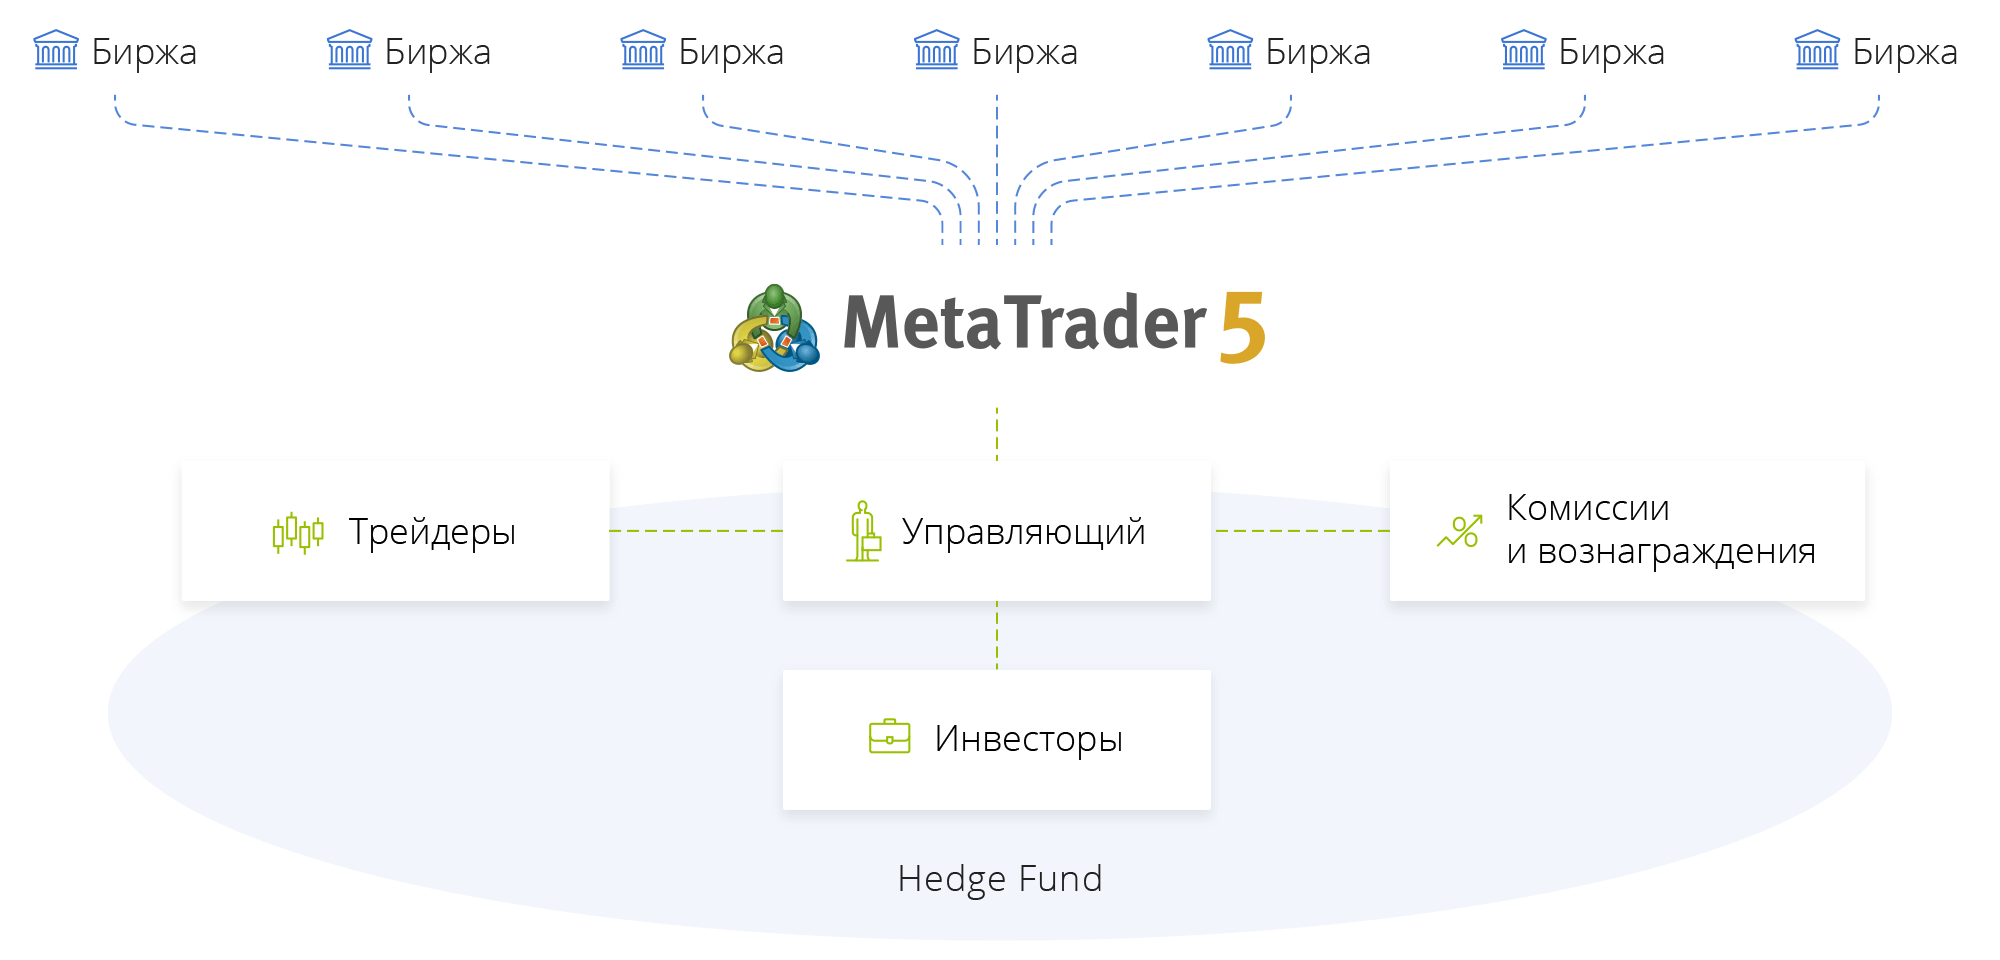 MetaTrader 5 — единый биржевой терминал с объединенной системой управления рисками и аналитикой